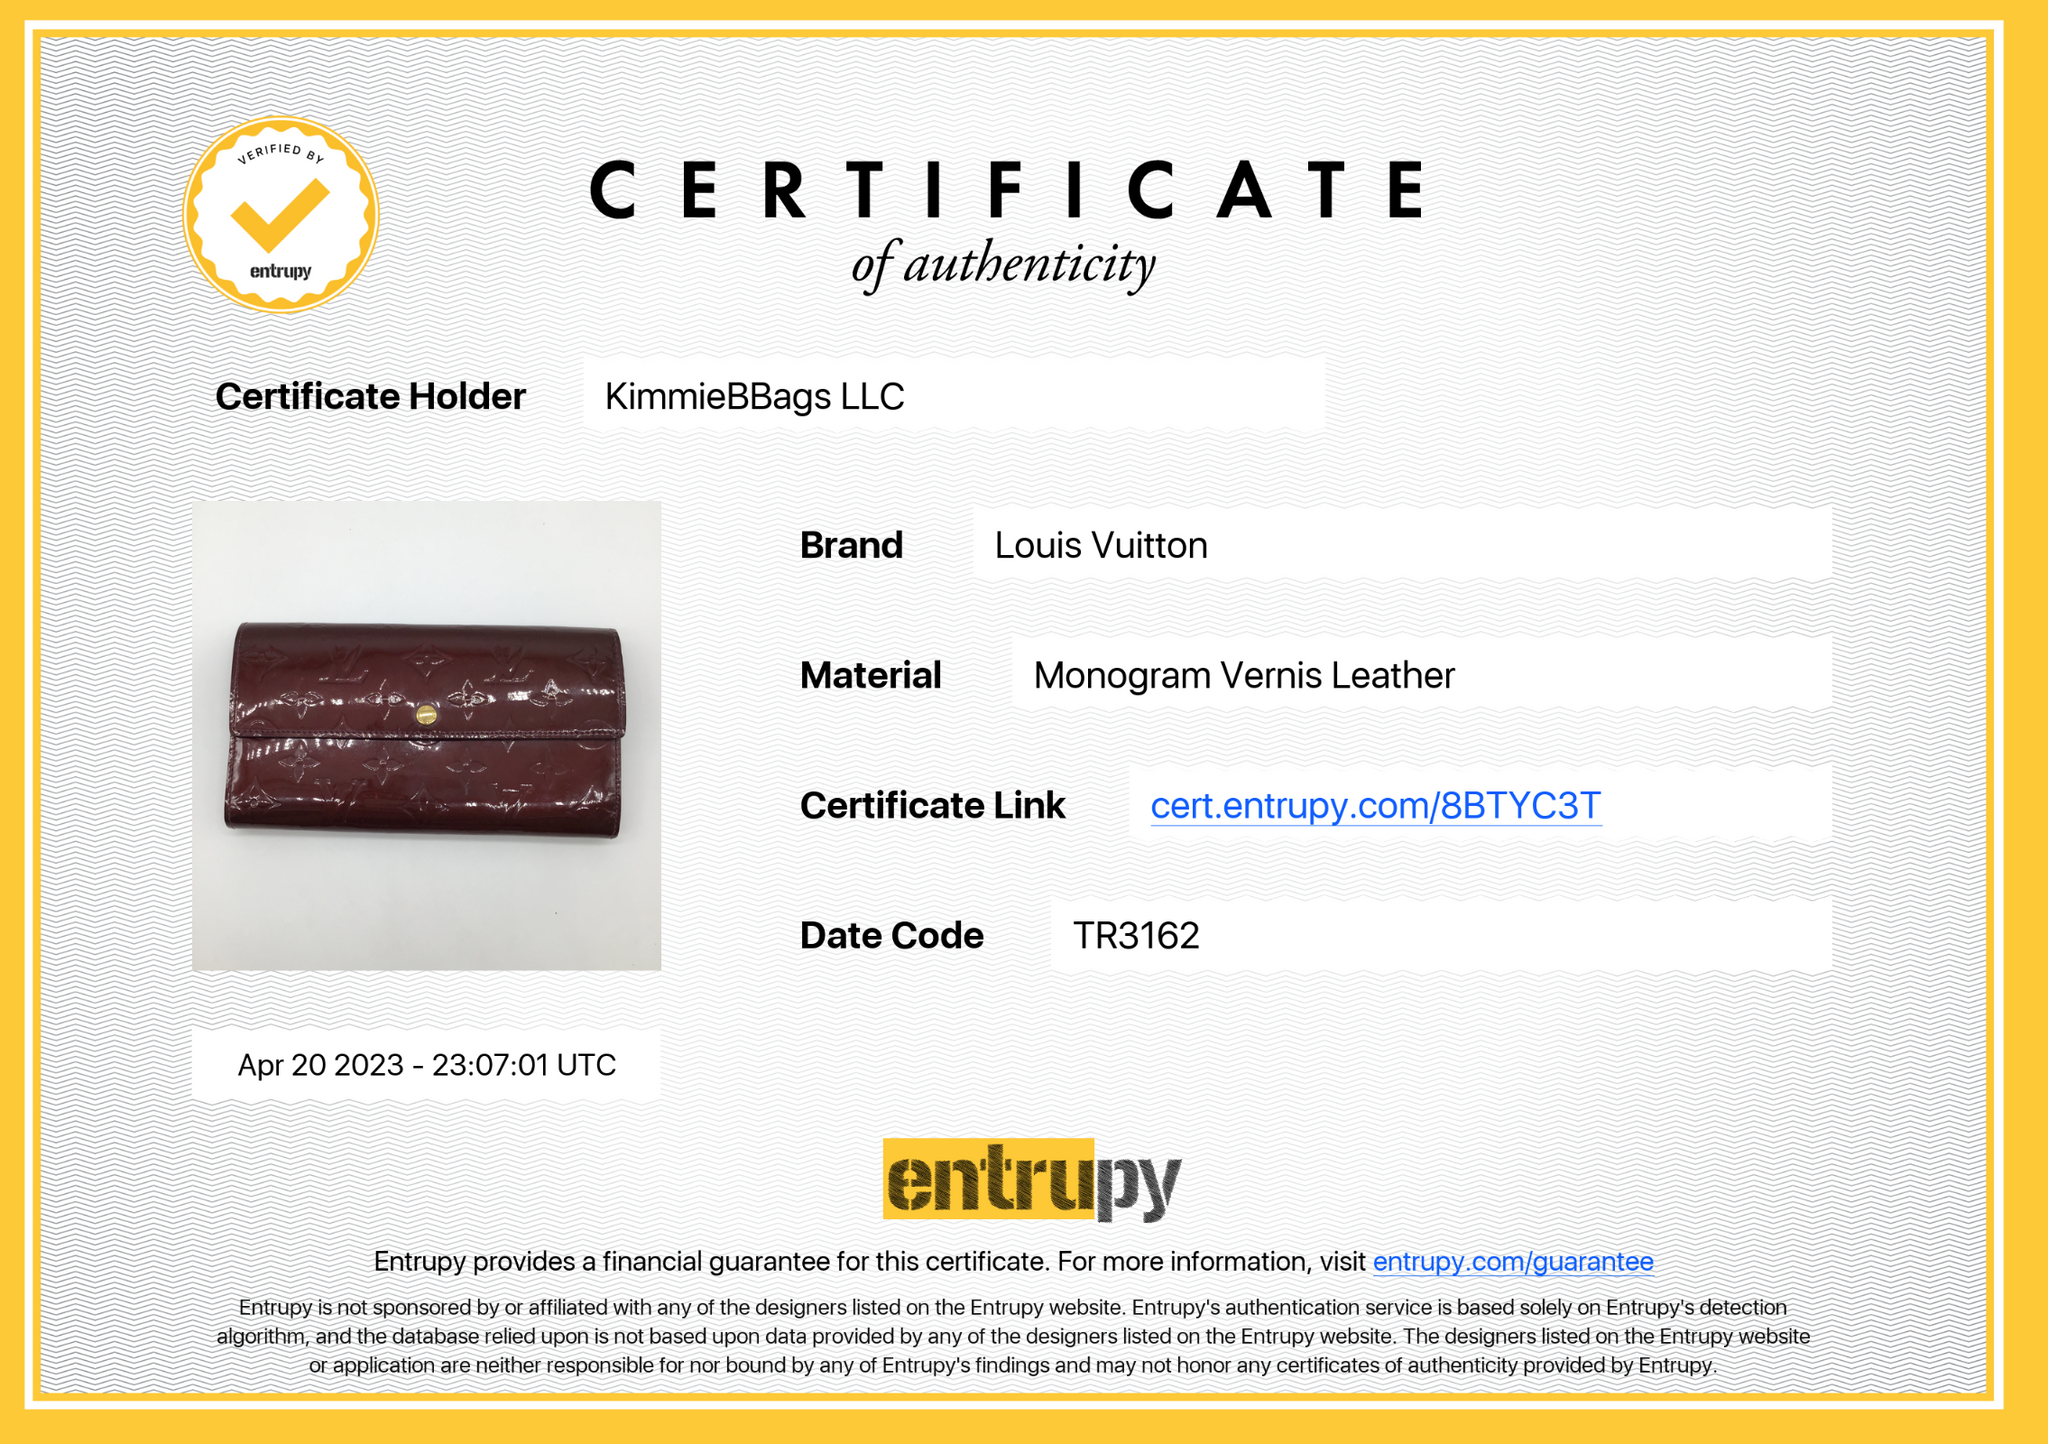 Louis Vuitton Monogram Sarah Gm Long Trim Wallet LV-1202P-0013 – MISLUX